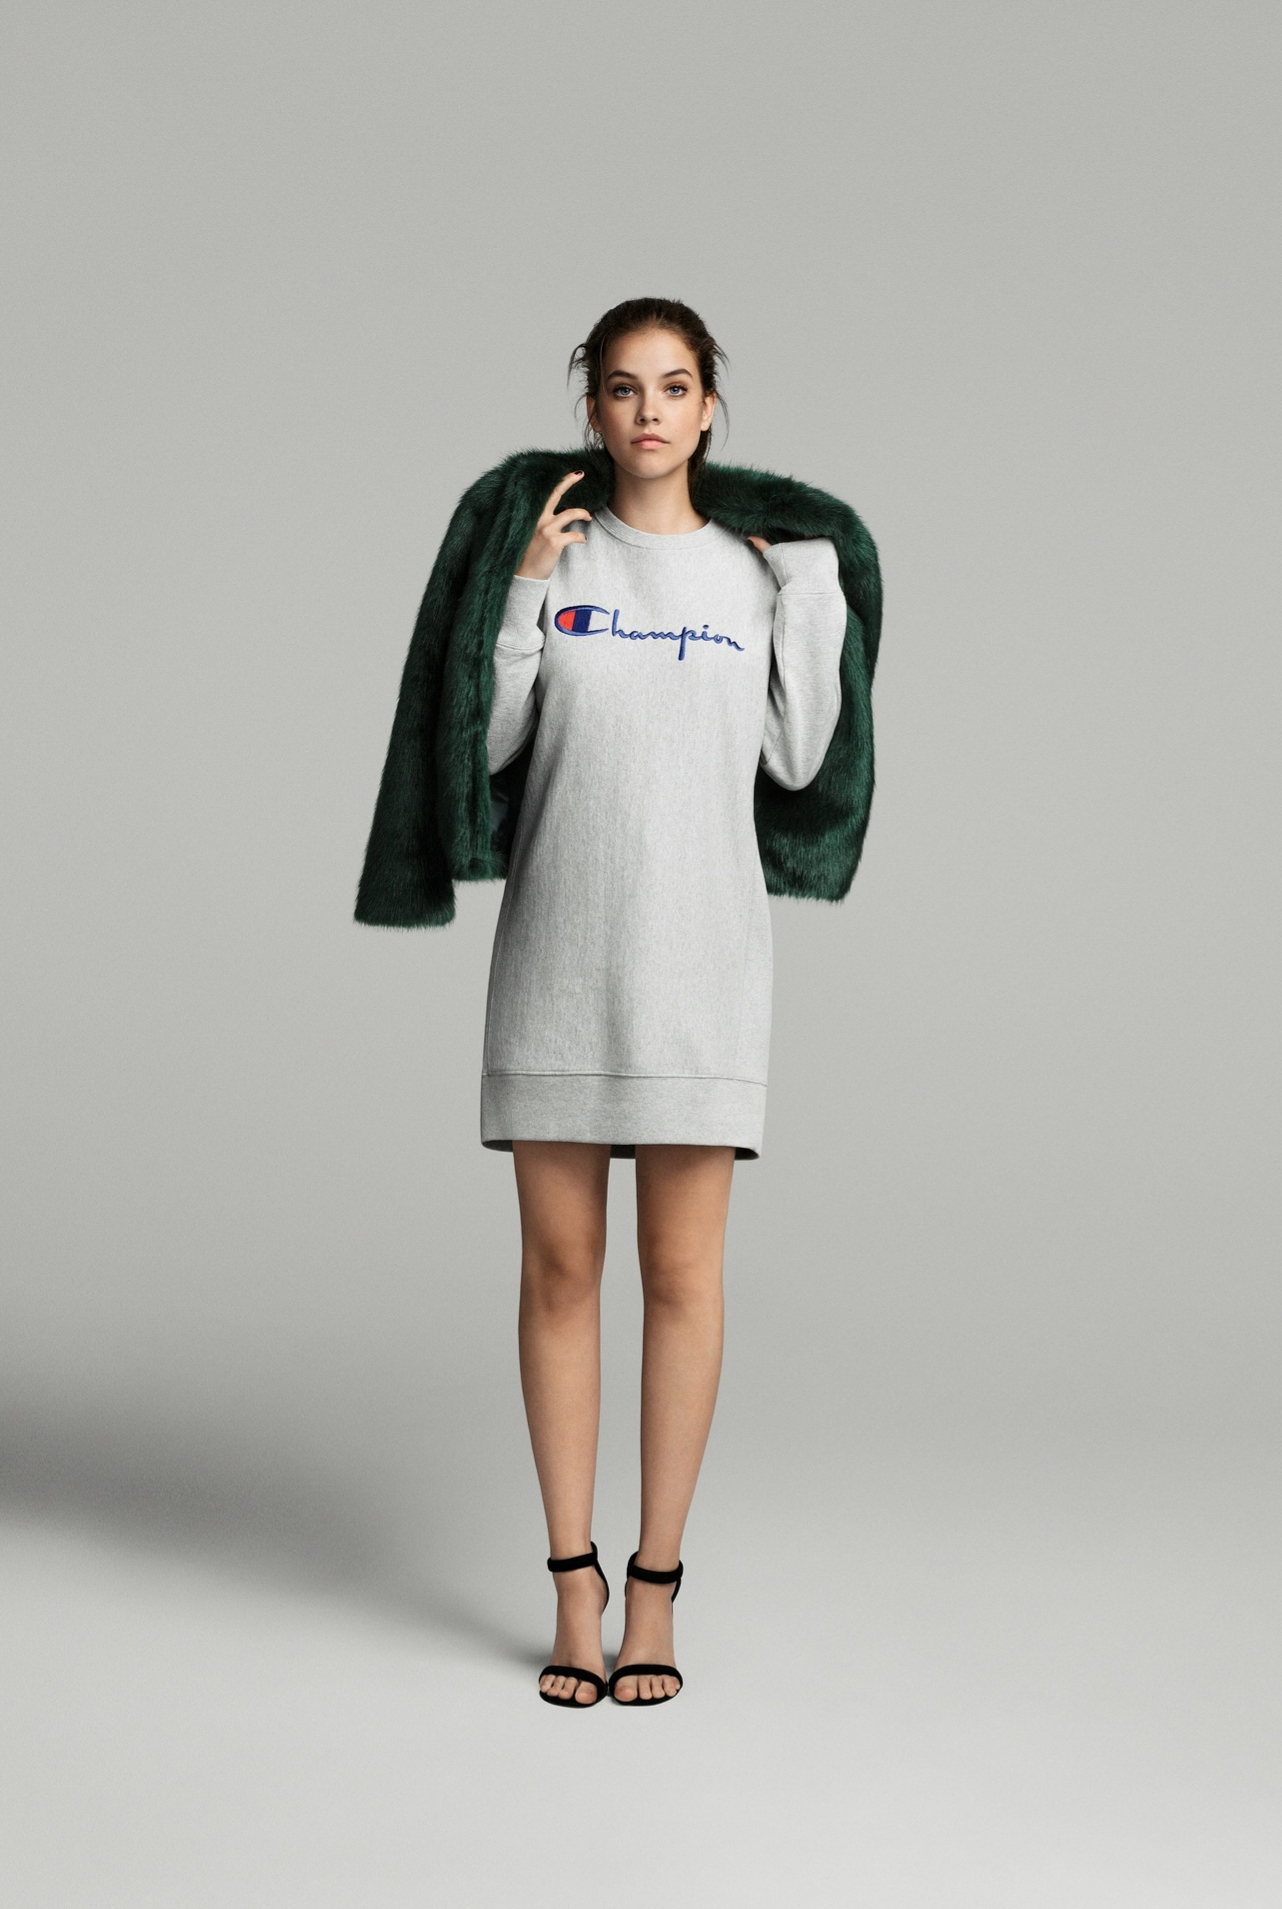 La modelo Barbara Palvin para la nueva campaña de Amazon Moda...